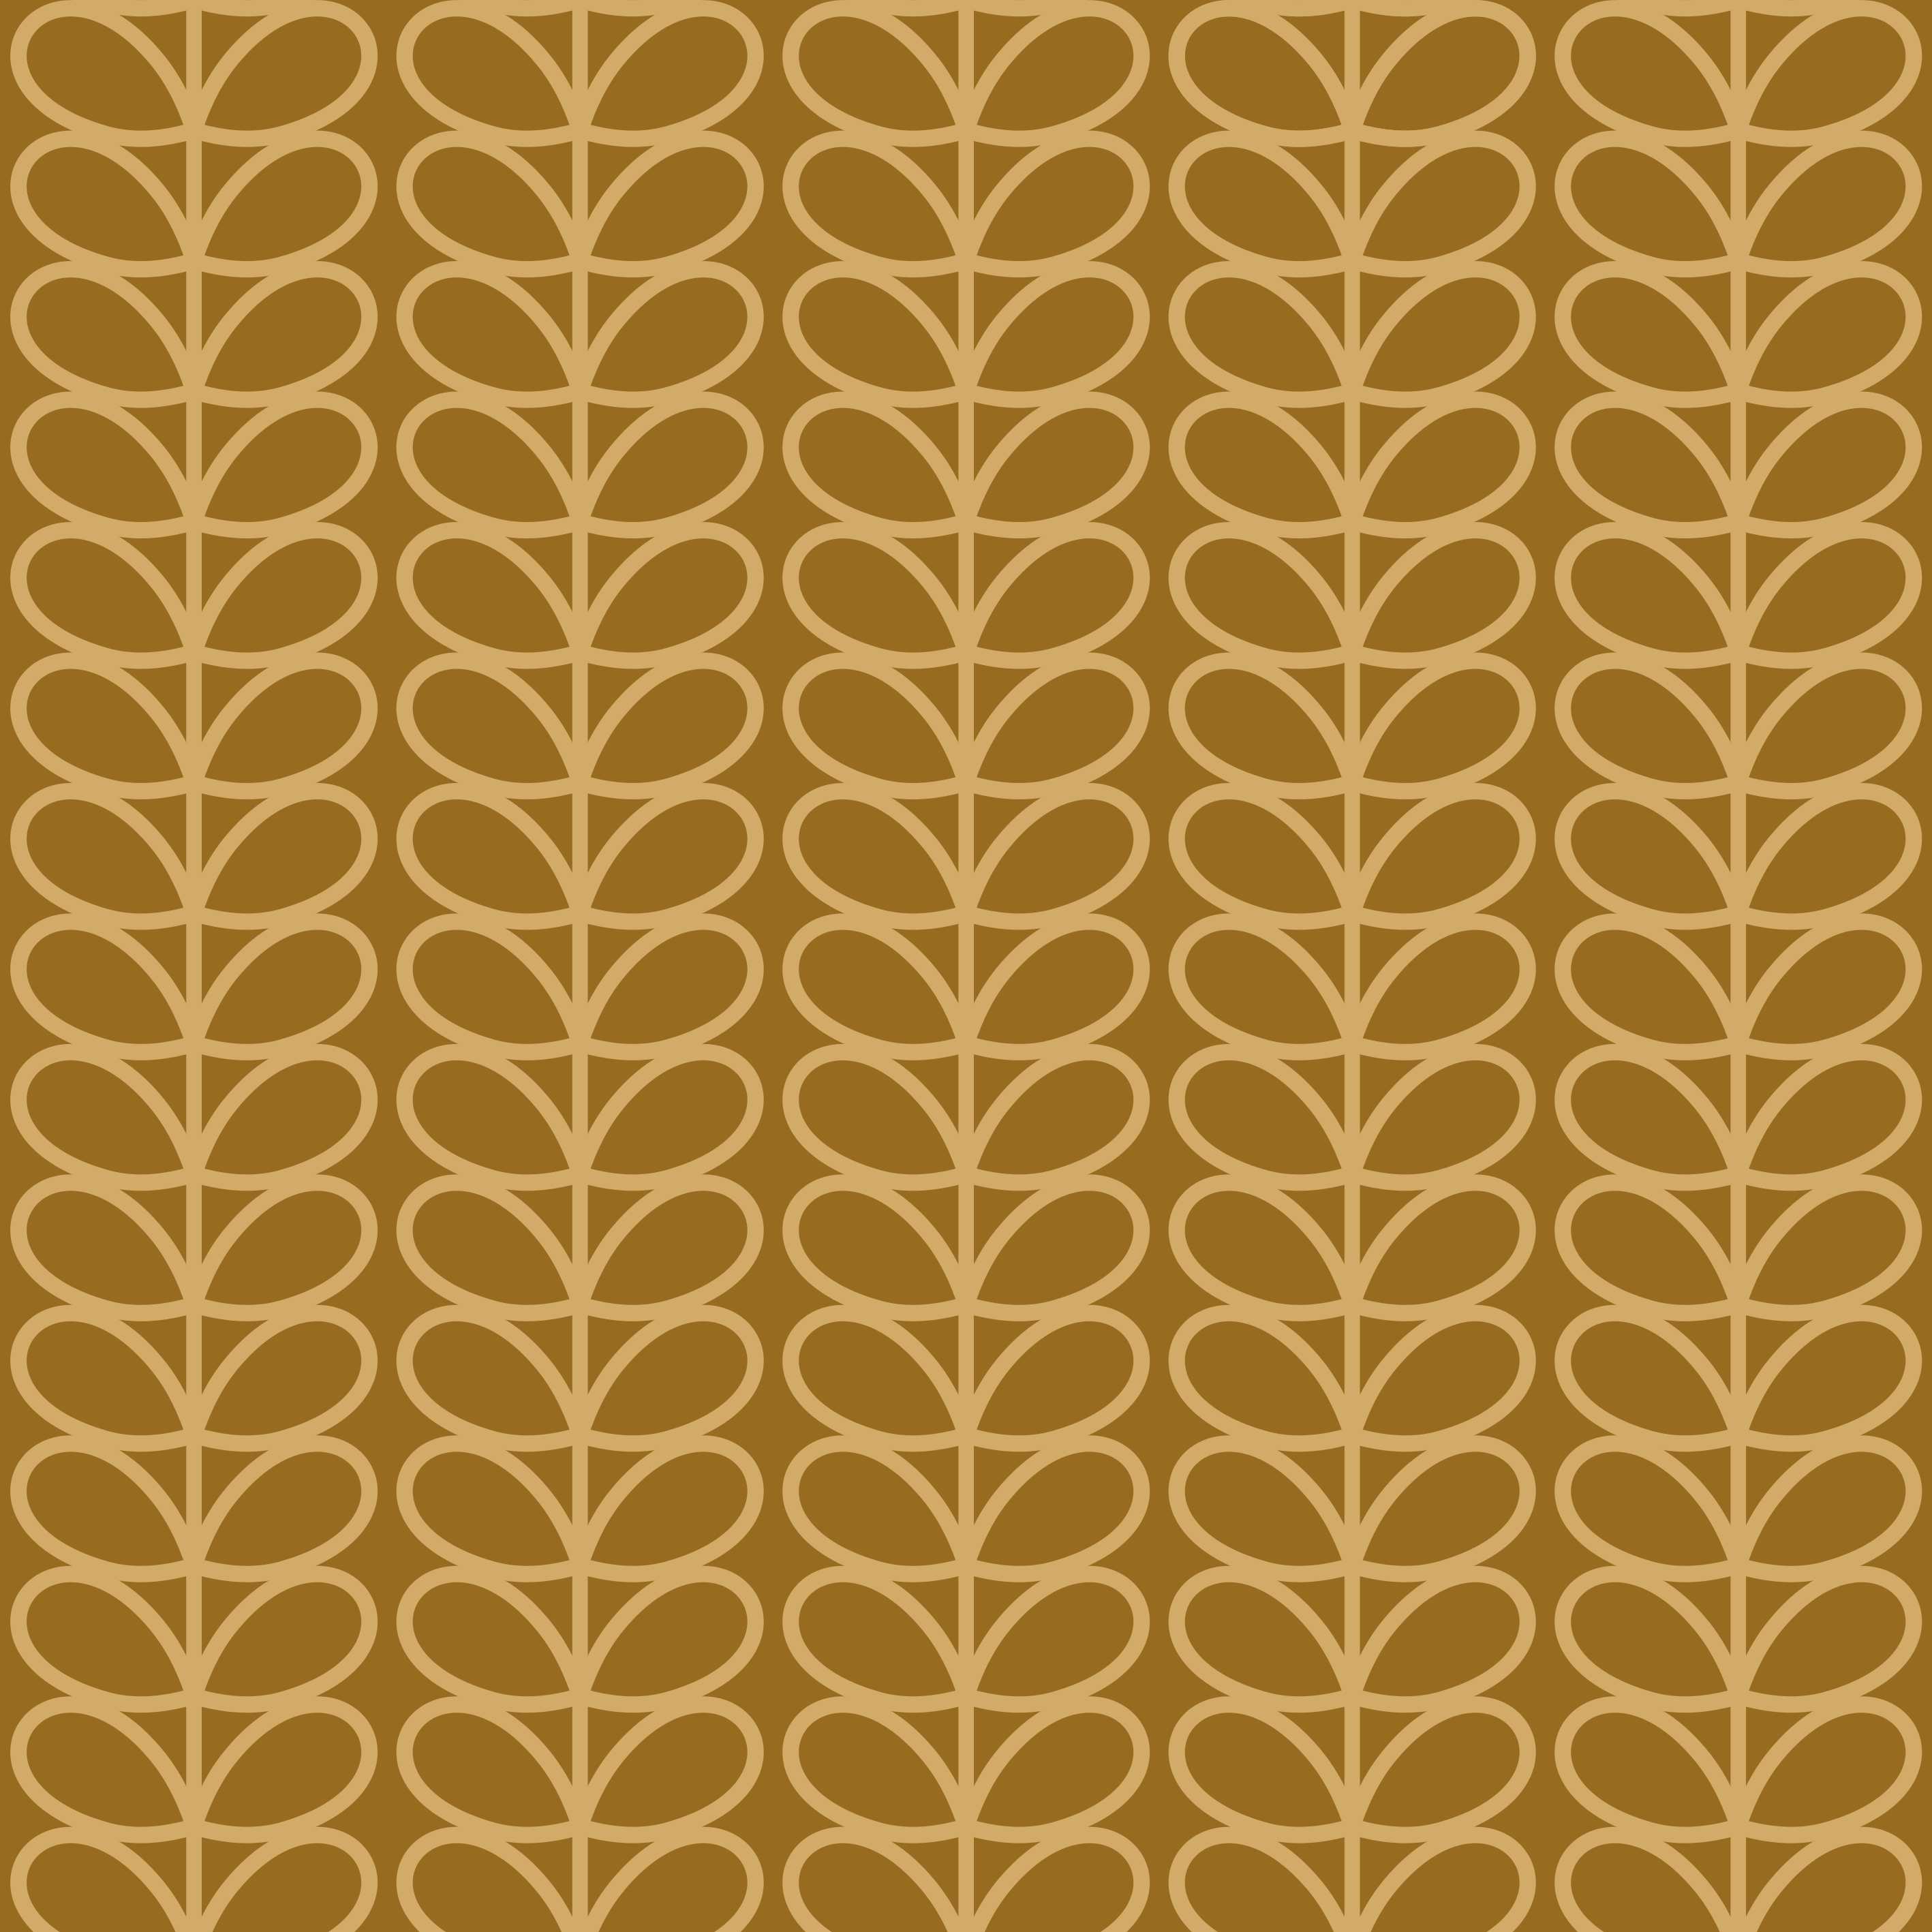 Copper wallpaper with beige leaves in Scandinavian/nordic boho style - Dekoori image 1